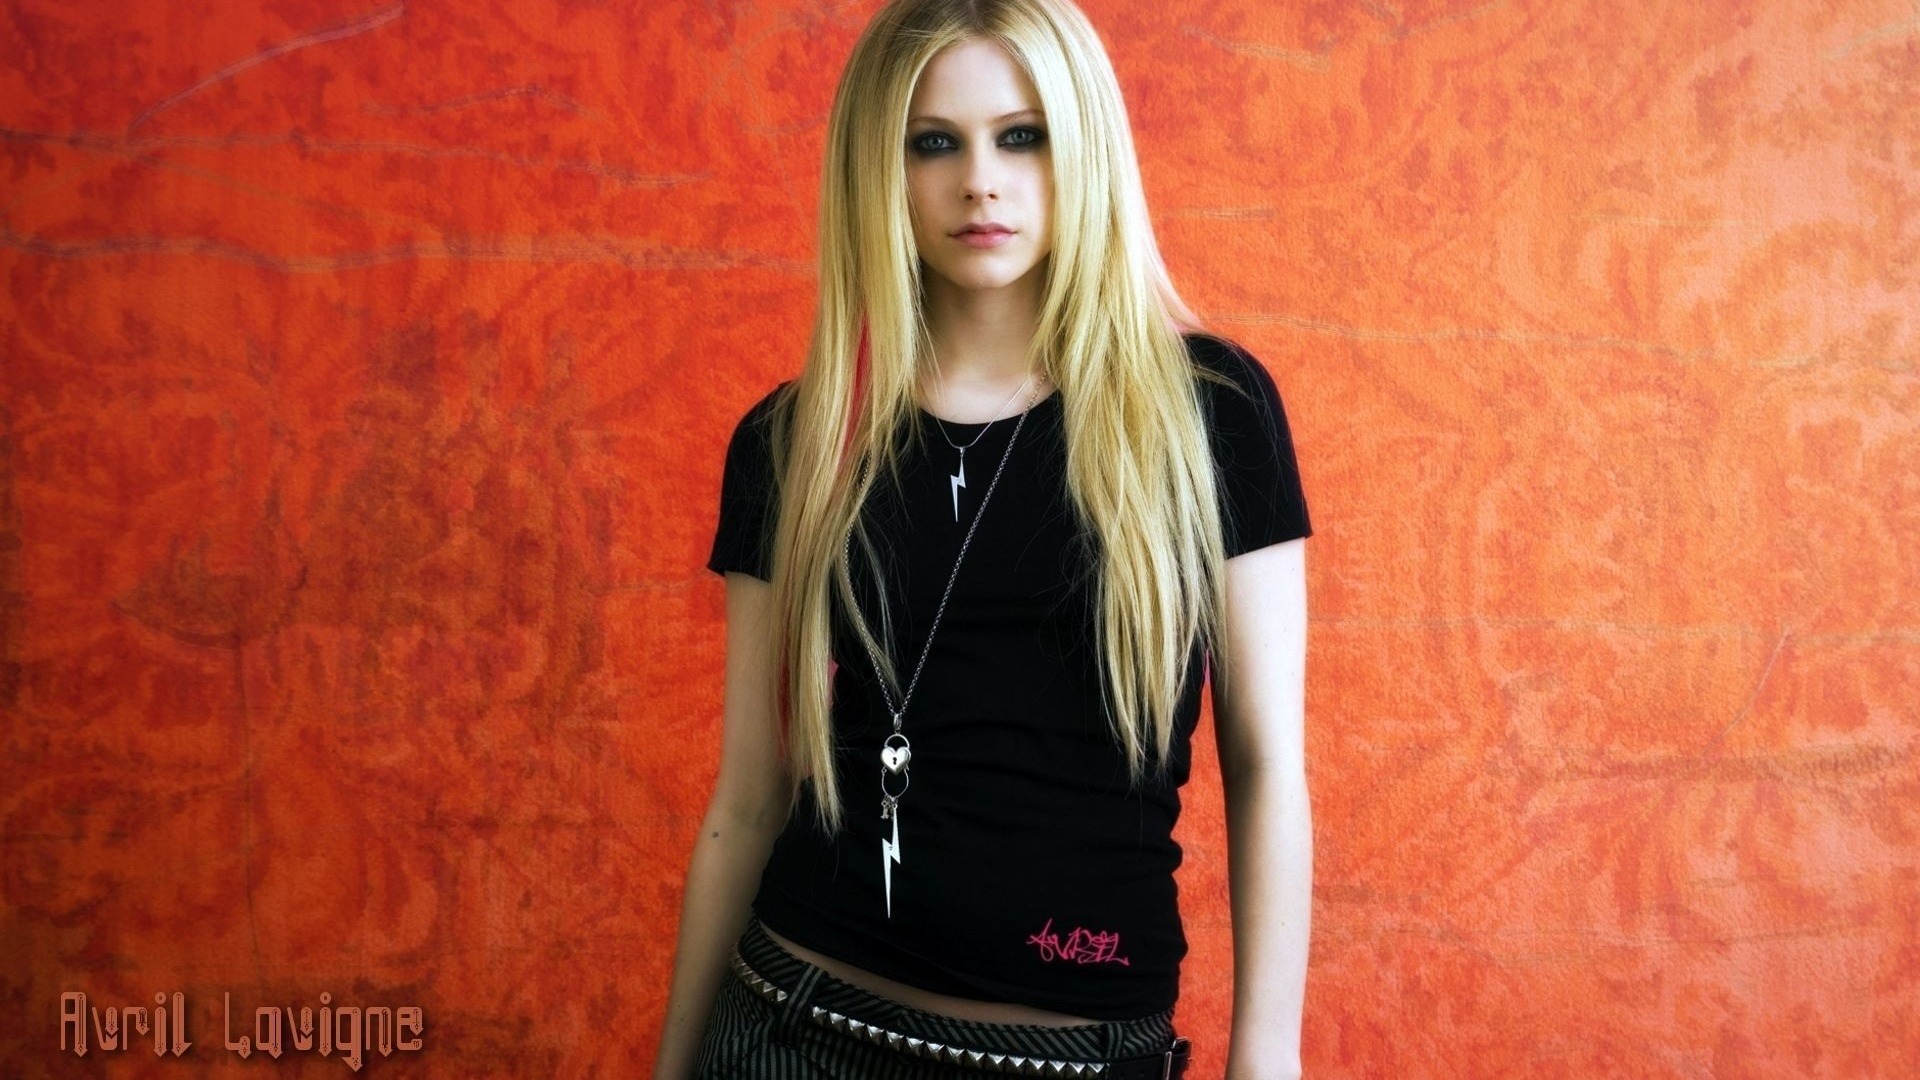 Avril Lavigne 艾薇儿·拉维妮 美女壁纸19 - 1920x1080